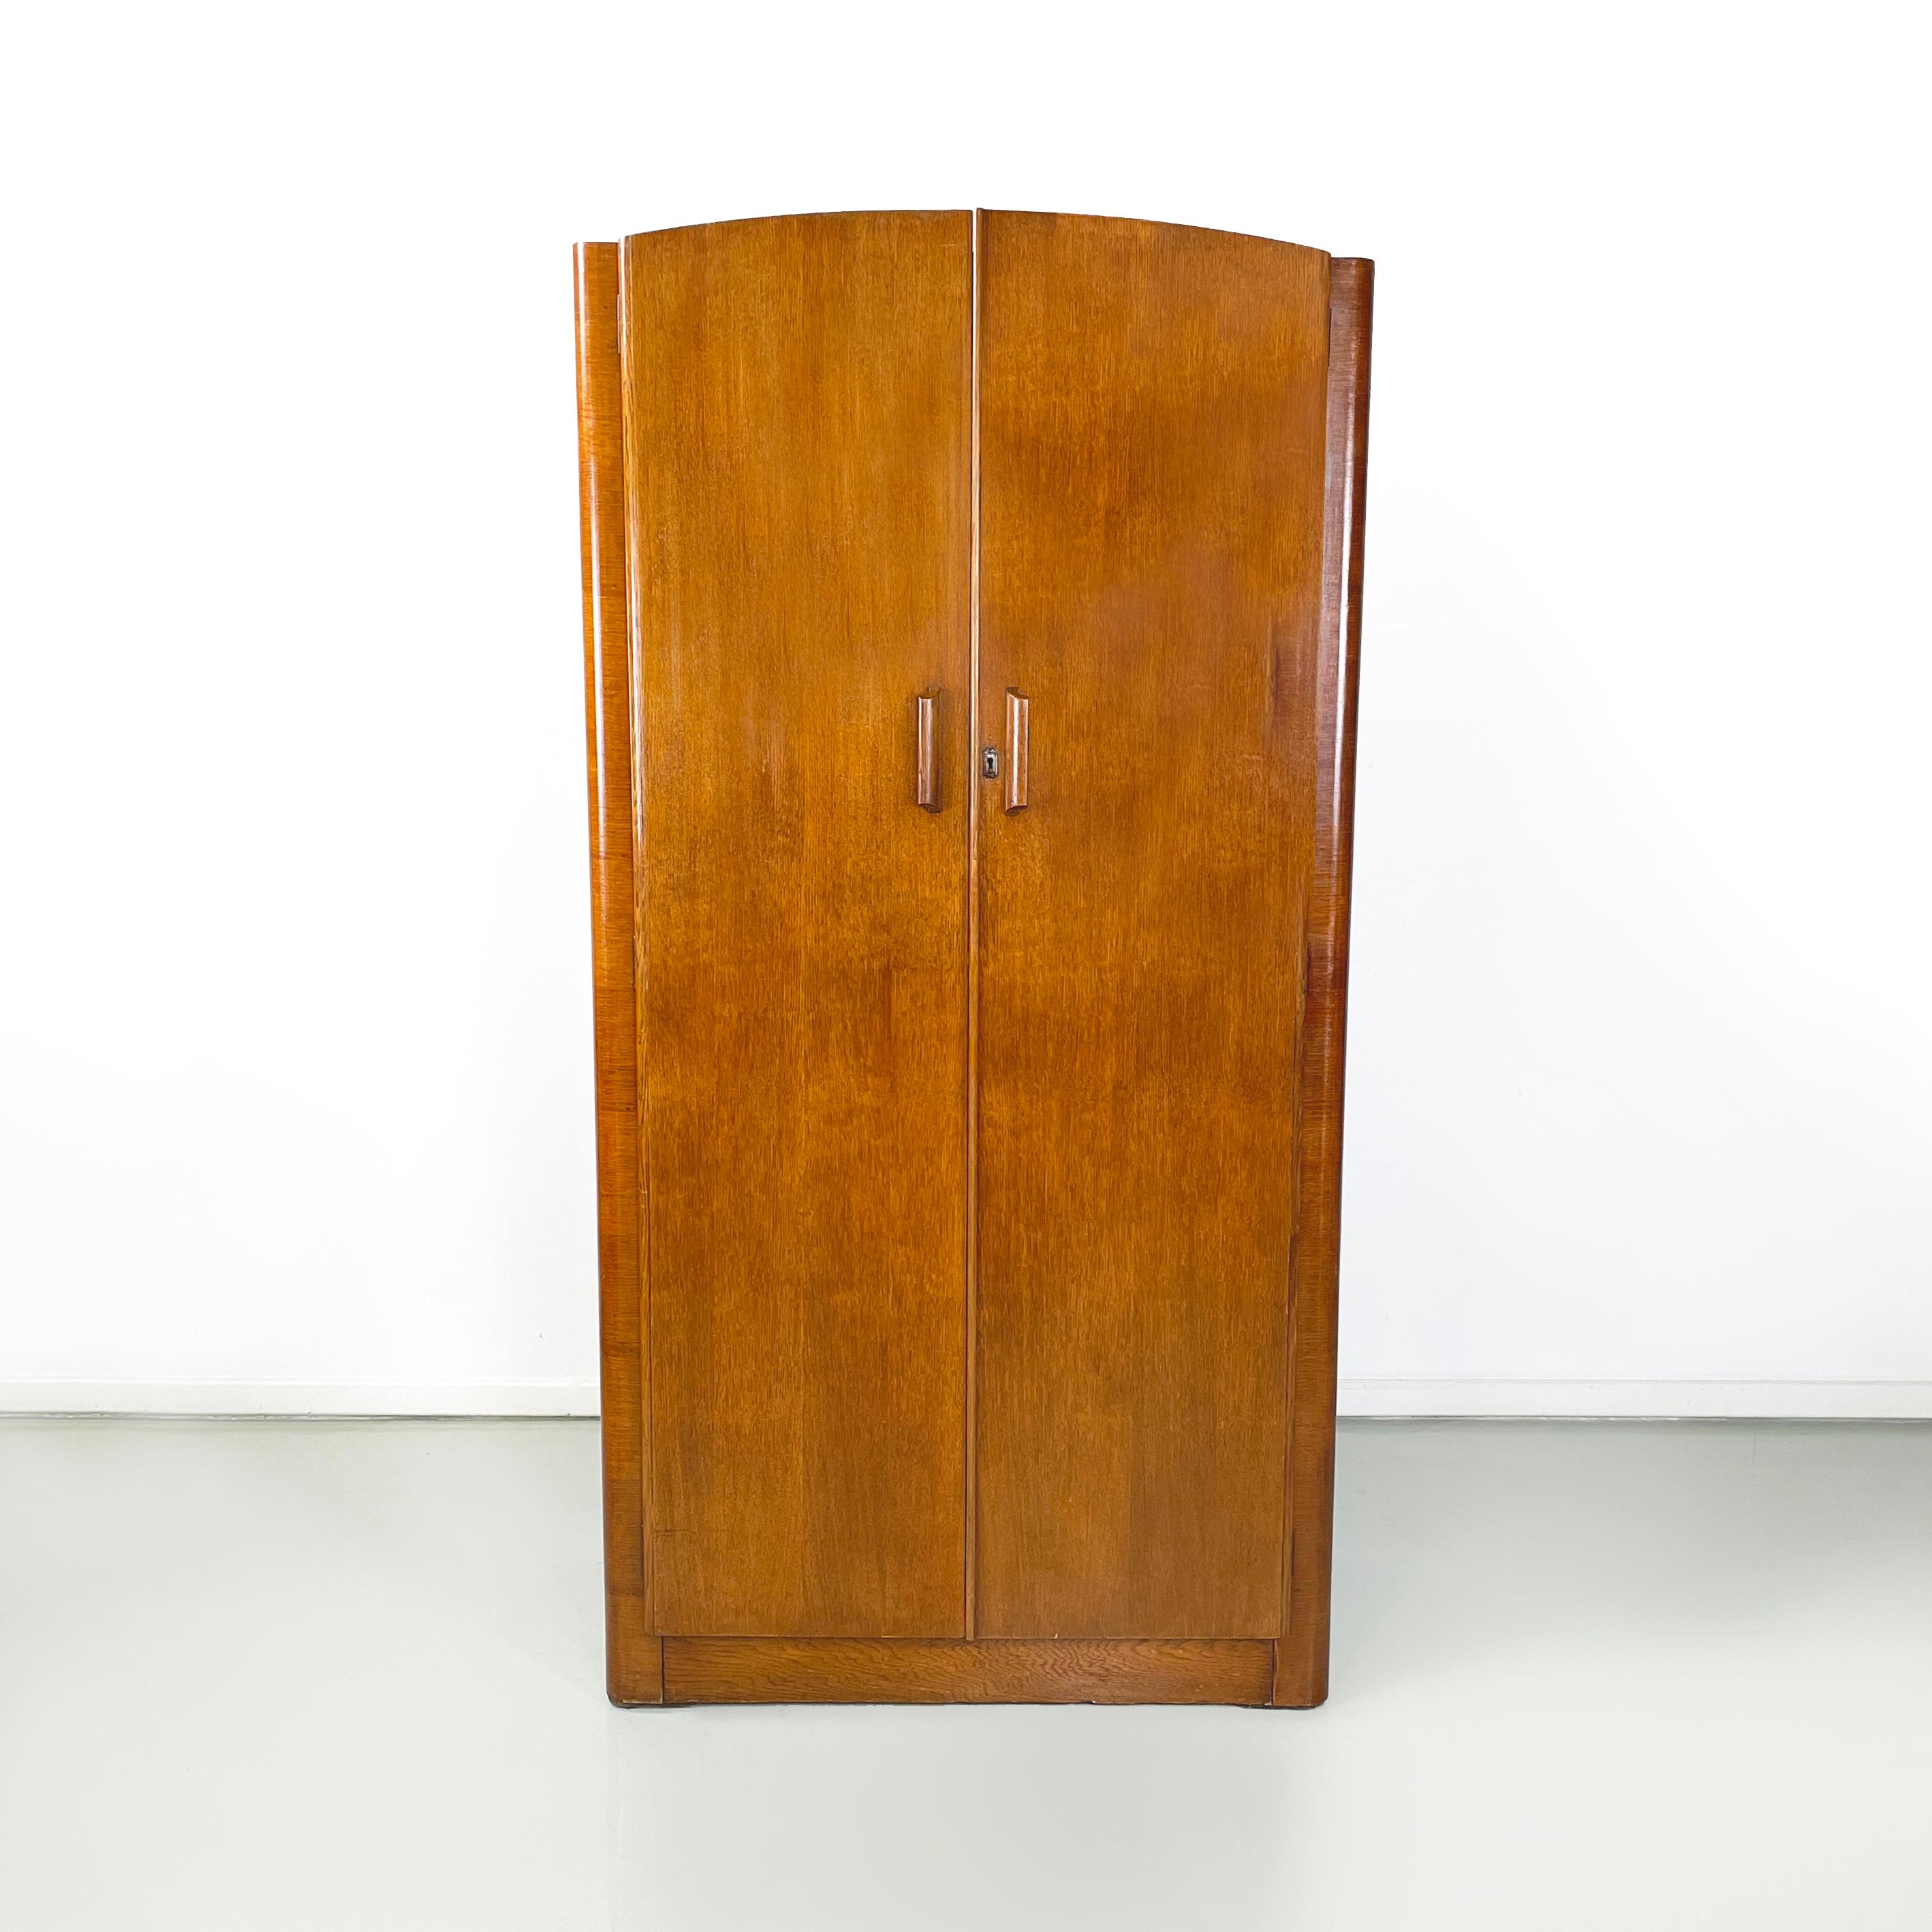 Italienischer Art-Deco-Schrank aus Holz mit Spiegel und Regalen, 1950er Jahre
Kleiderschrank ganz aus Massivholz mit Doppelflügeltür. Im Inneren gibt es zwei Räume. Auf der linken Seite befindet sich ein ausziehbarer Metallkleiderbügel mit einer